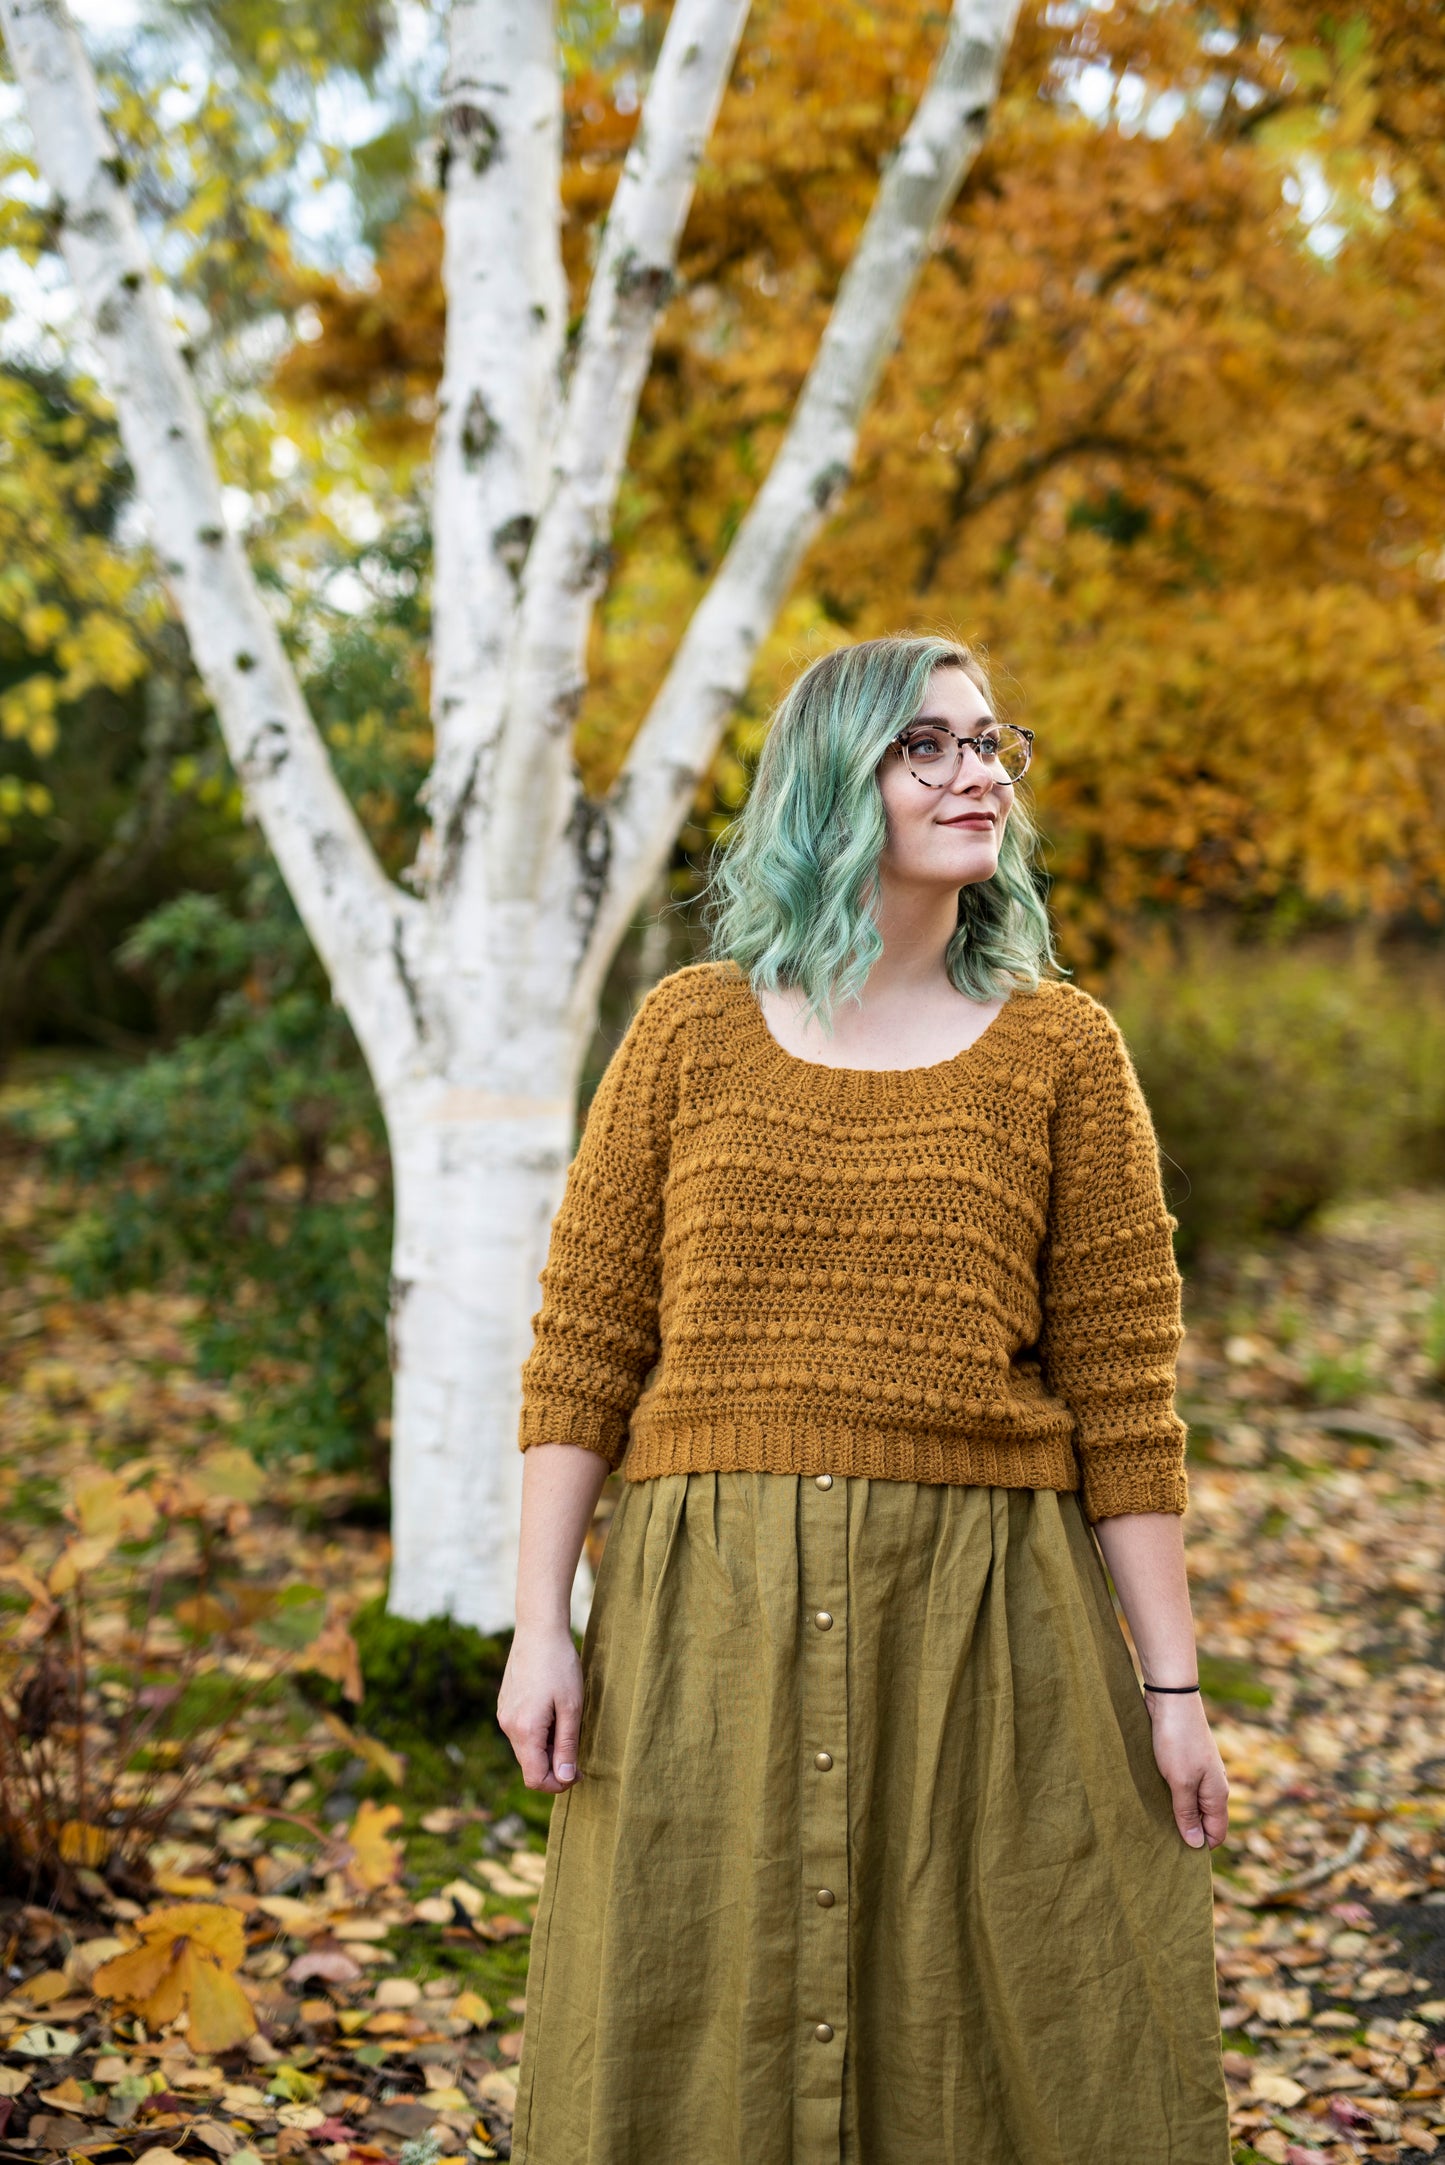 Crochet Pattern: The Goldfinch Sweater